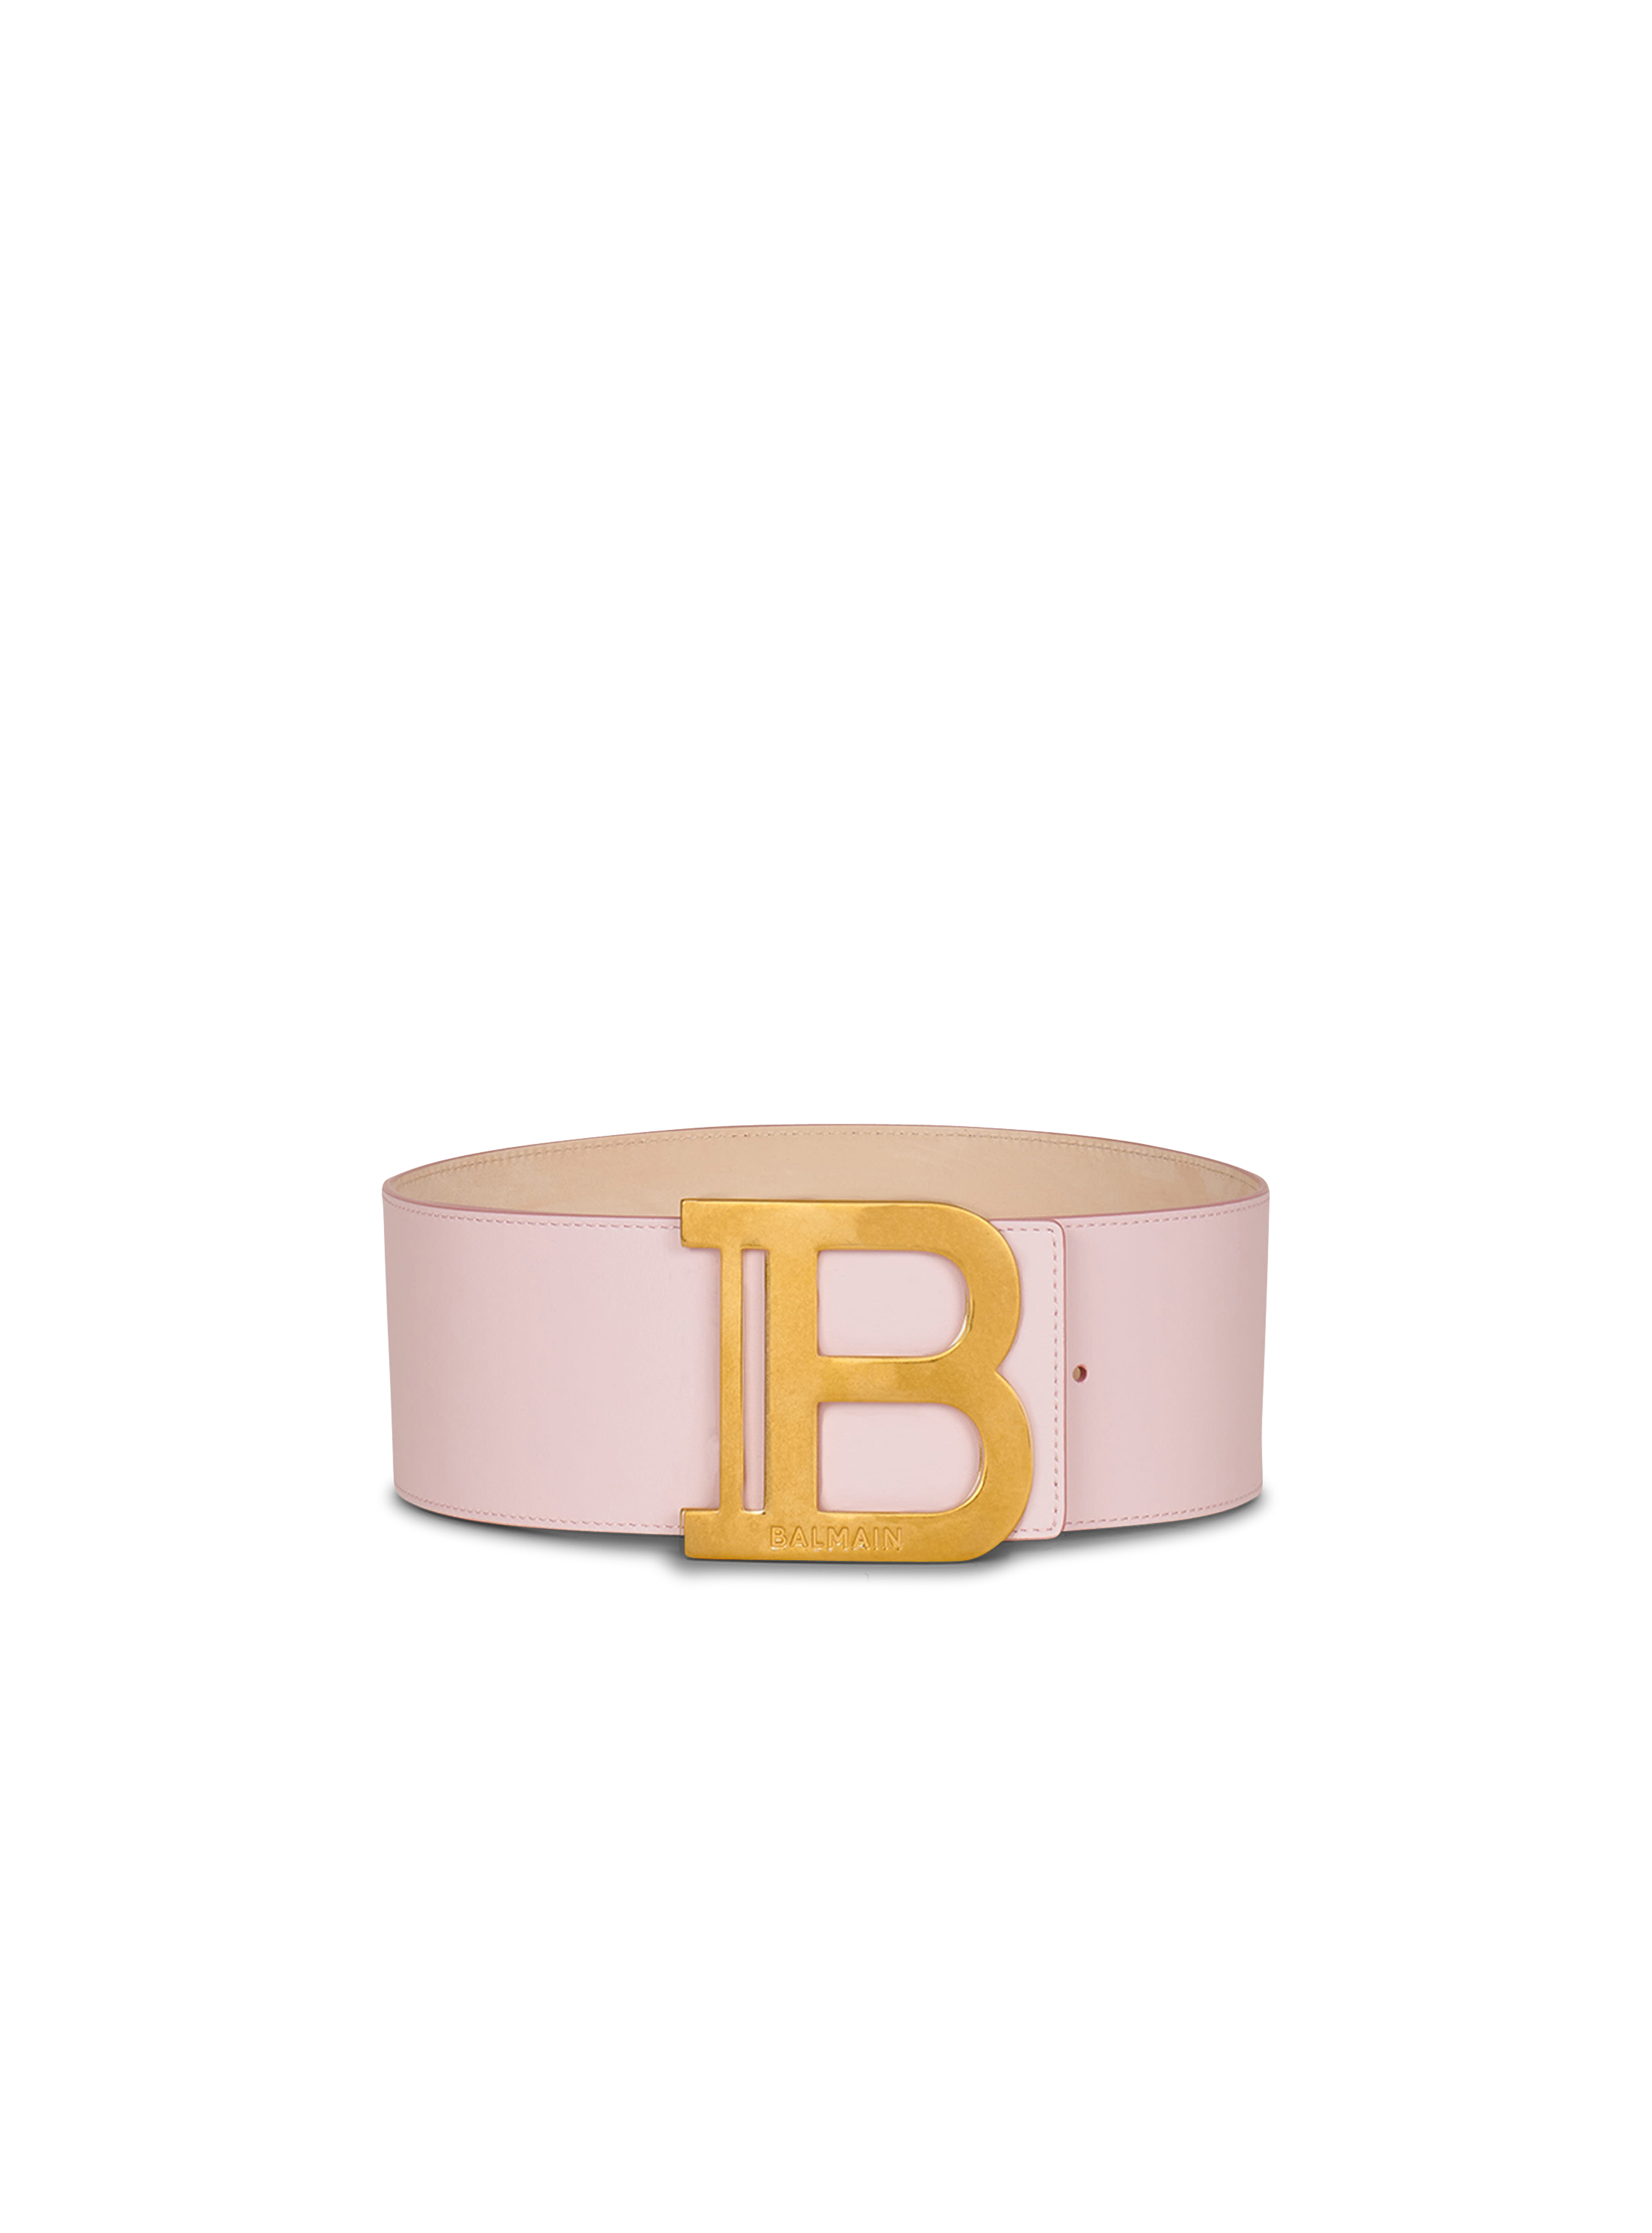 B-Belt 皮革腰带, pink